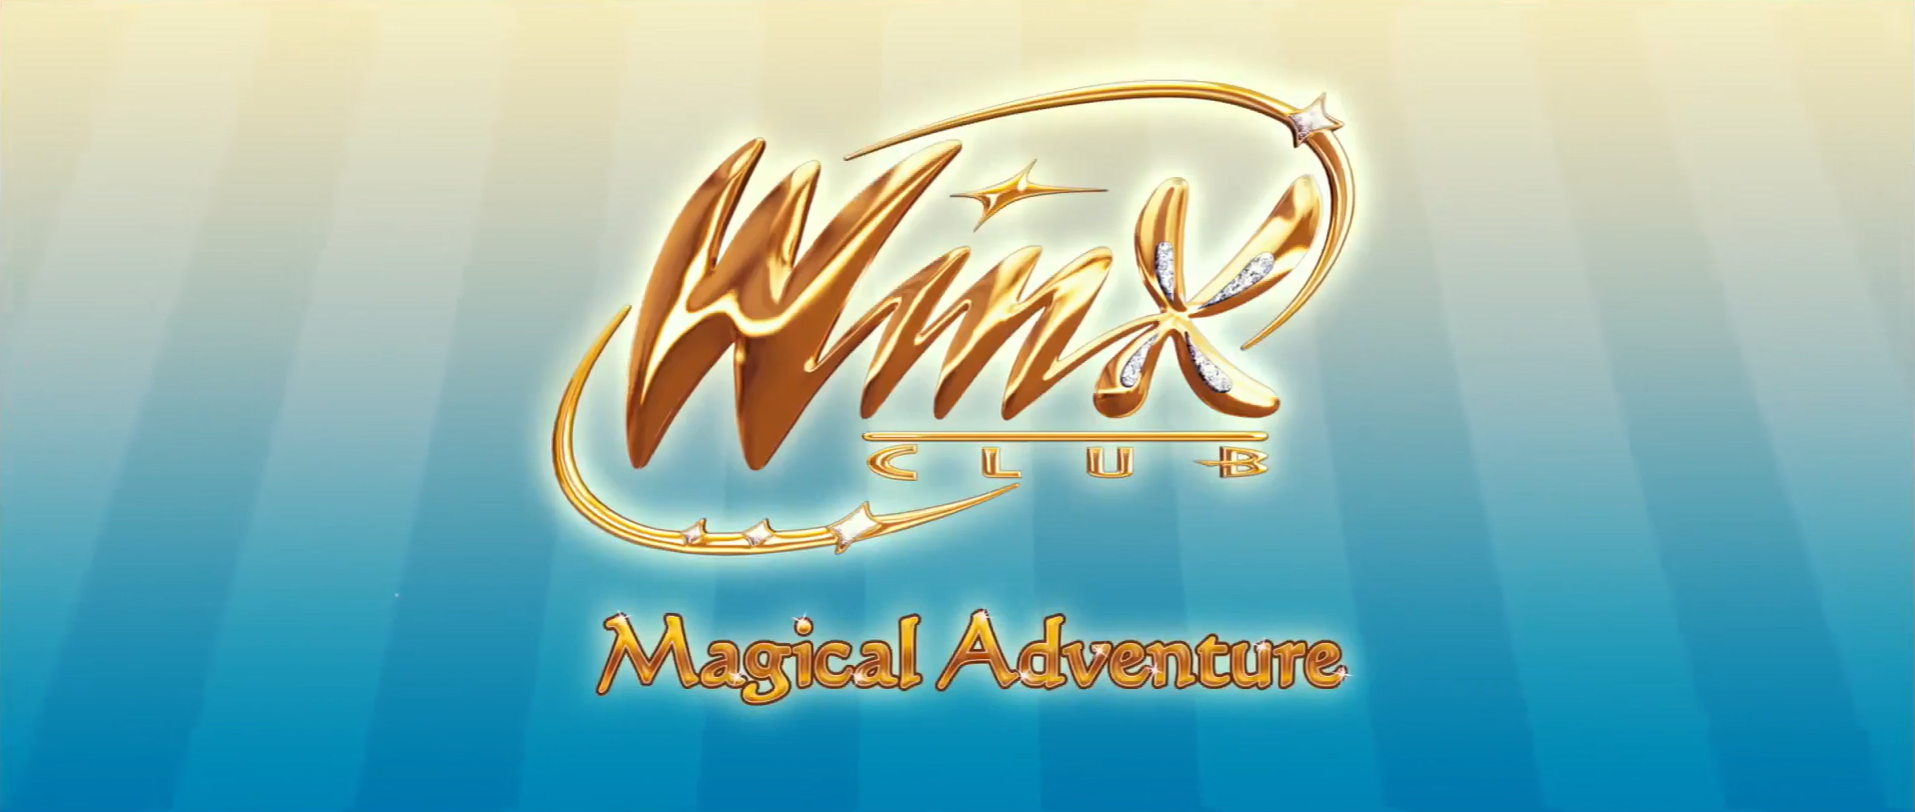 winx club magical adventure indonesia